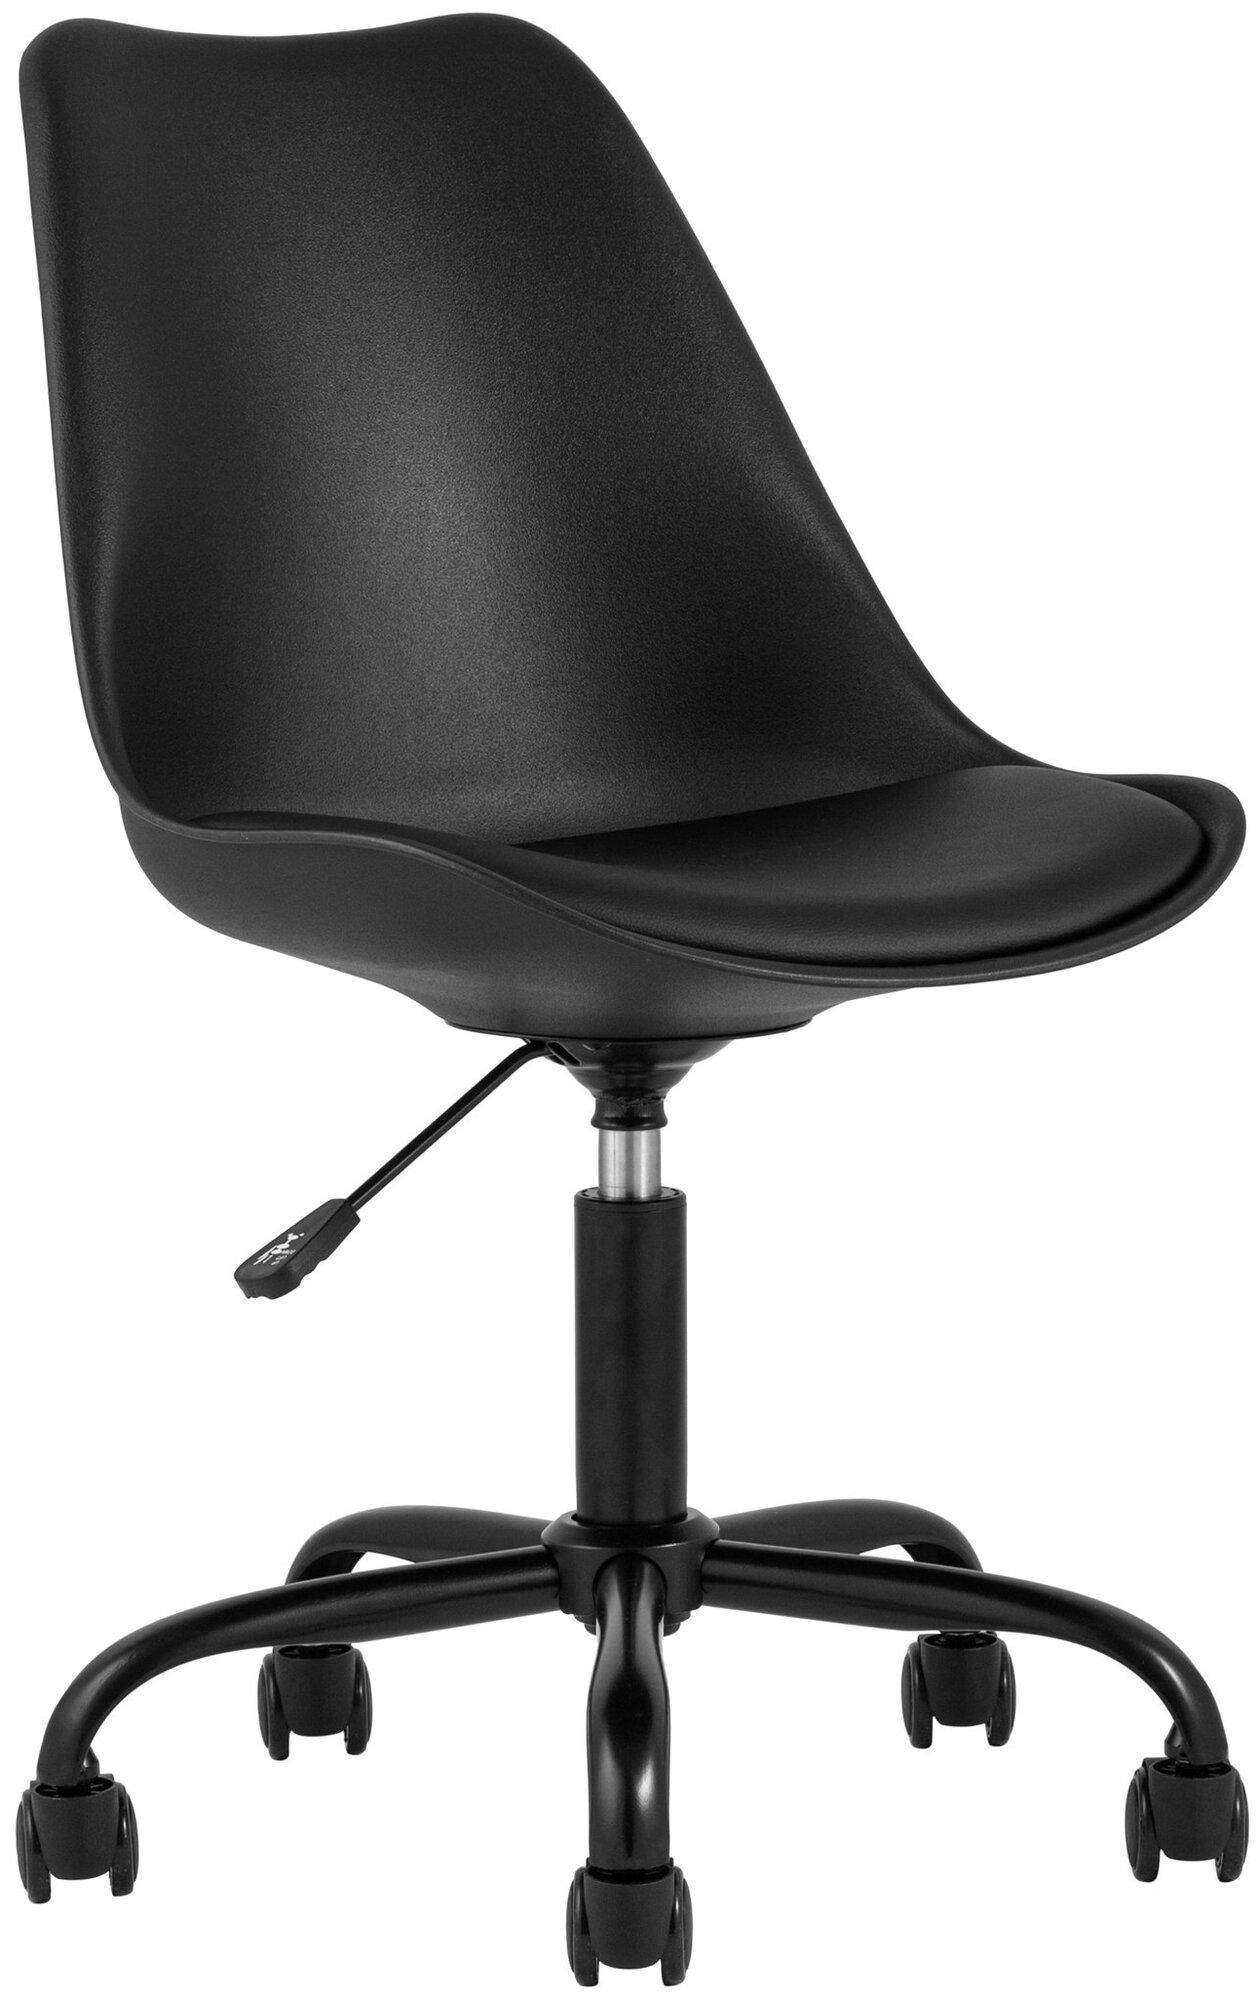 Компьютерное кресло STOOL GROUP Blok офисное, цвет: черный